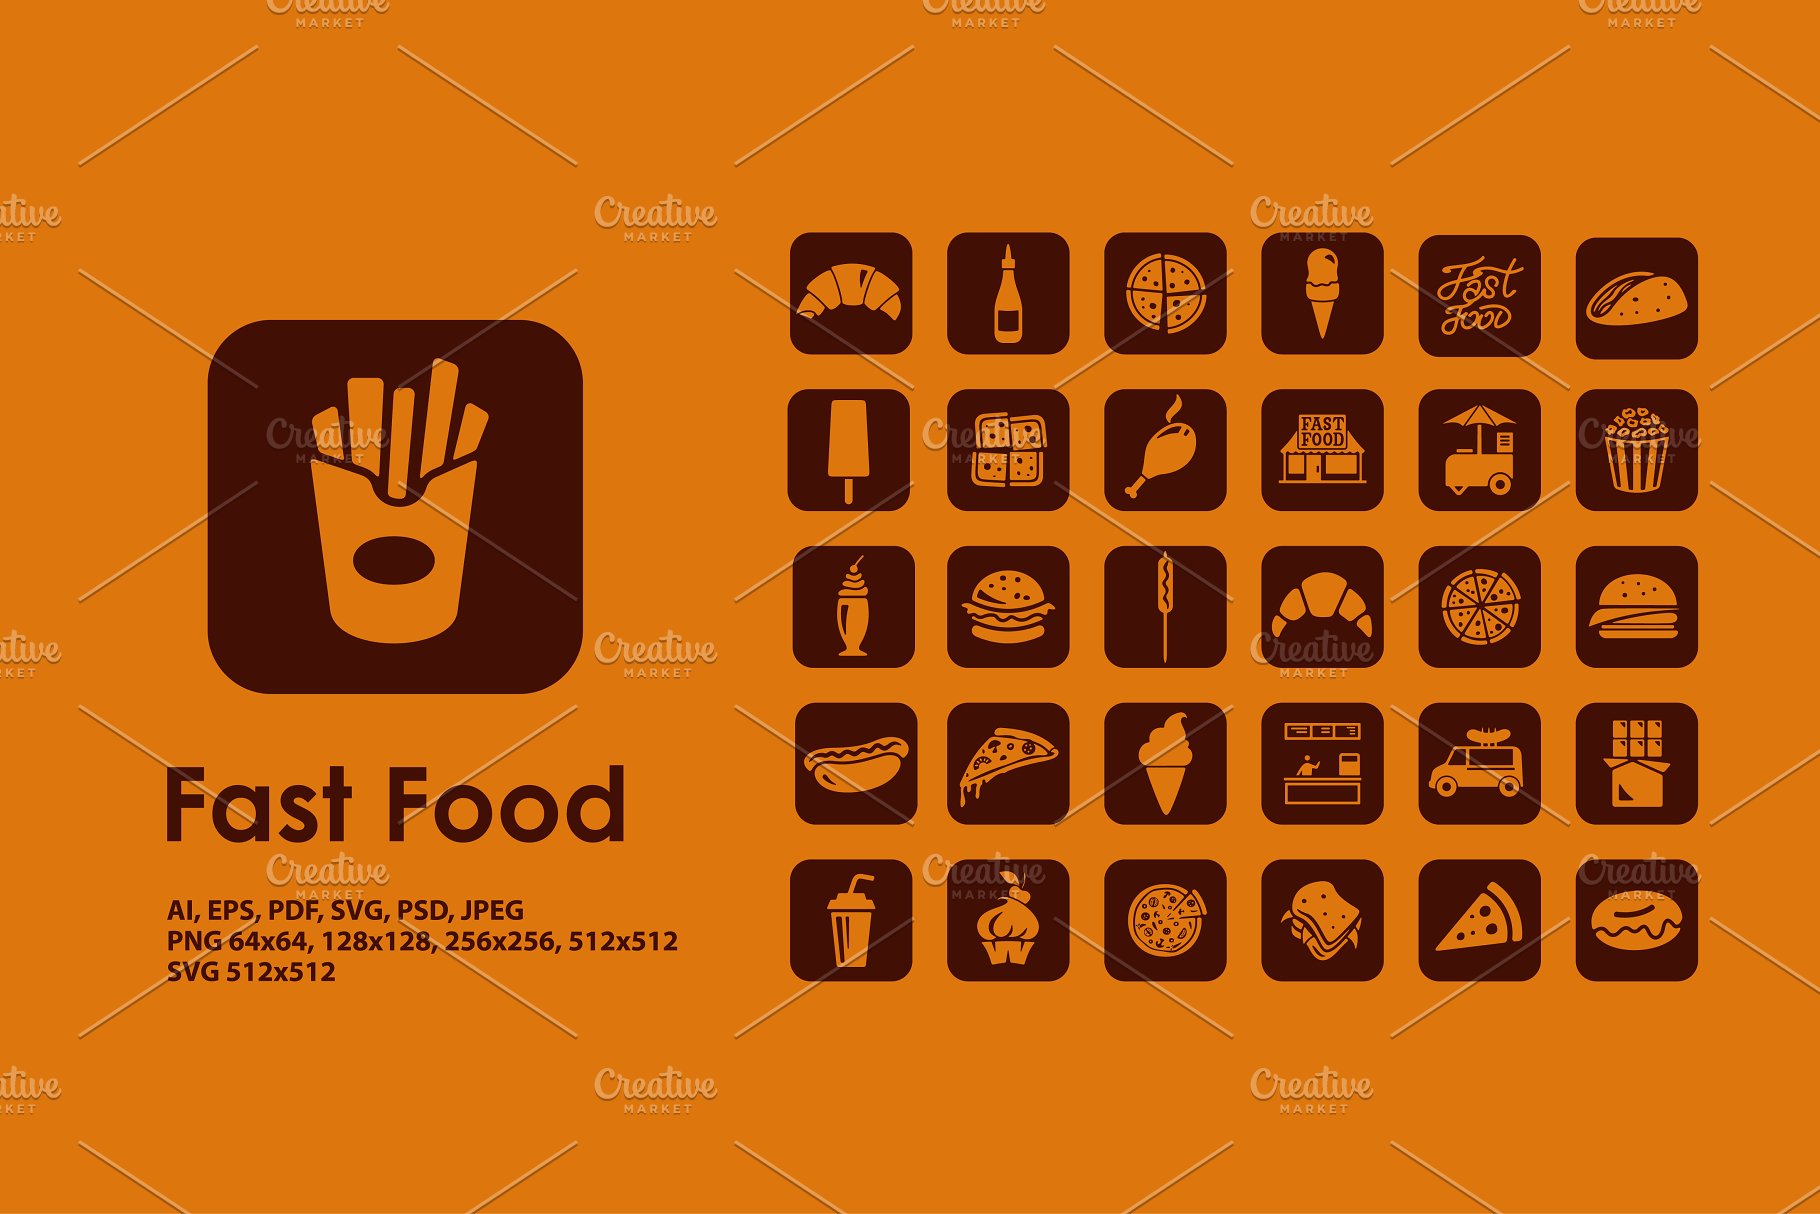 快餐食品图标 Fast Food icons #91241